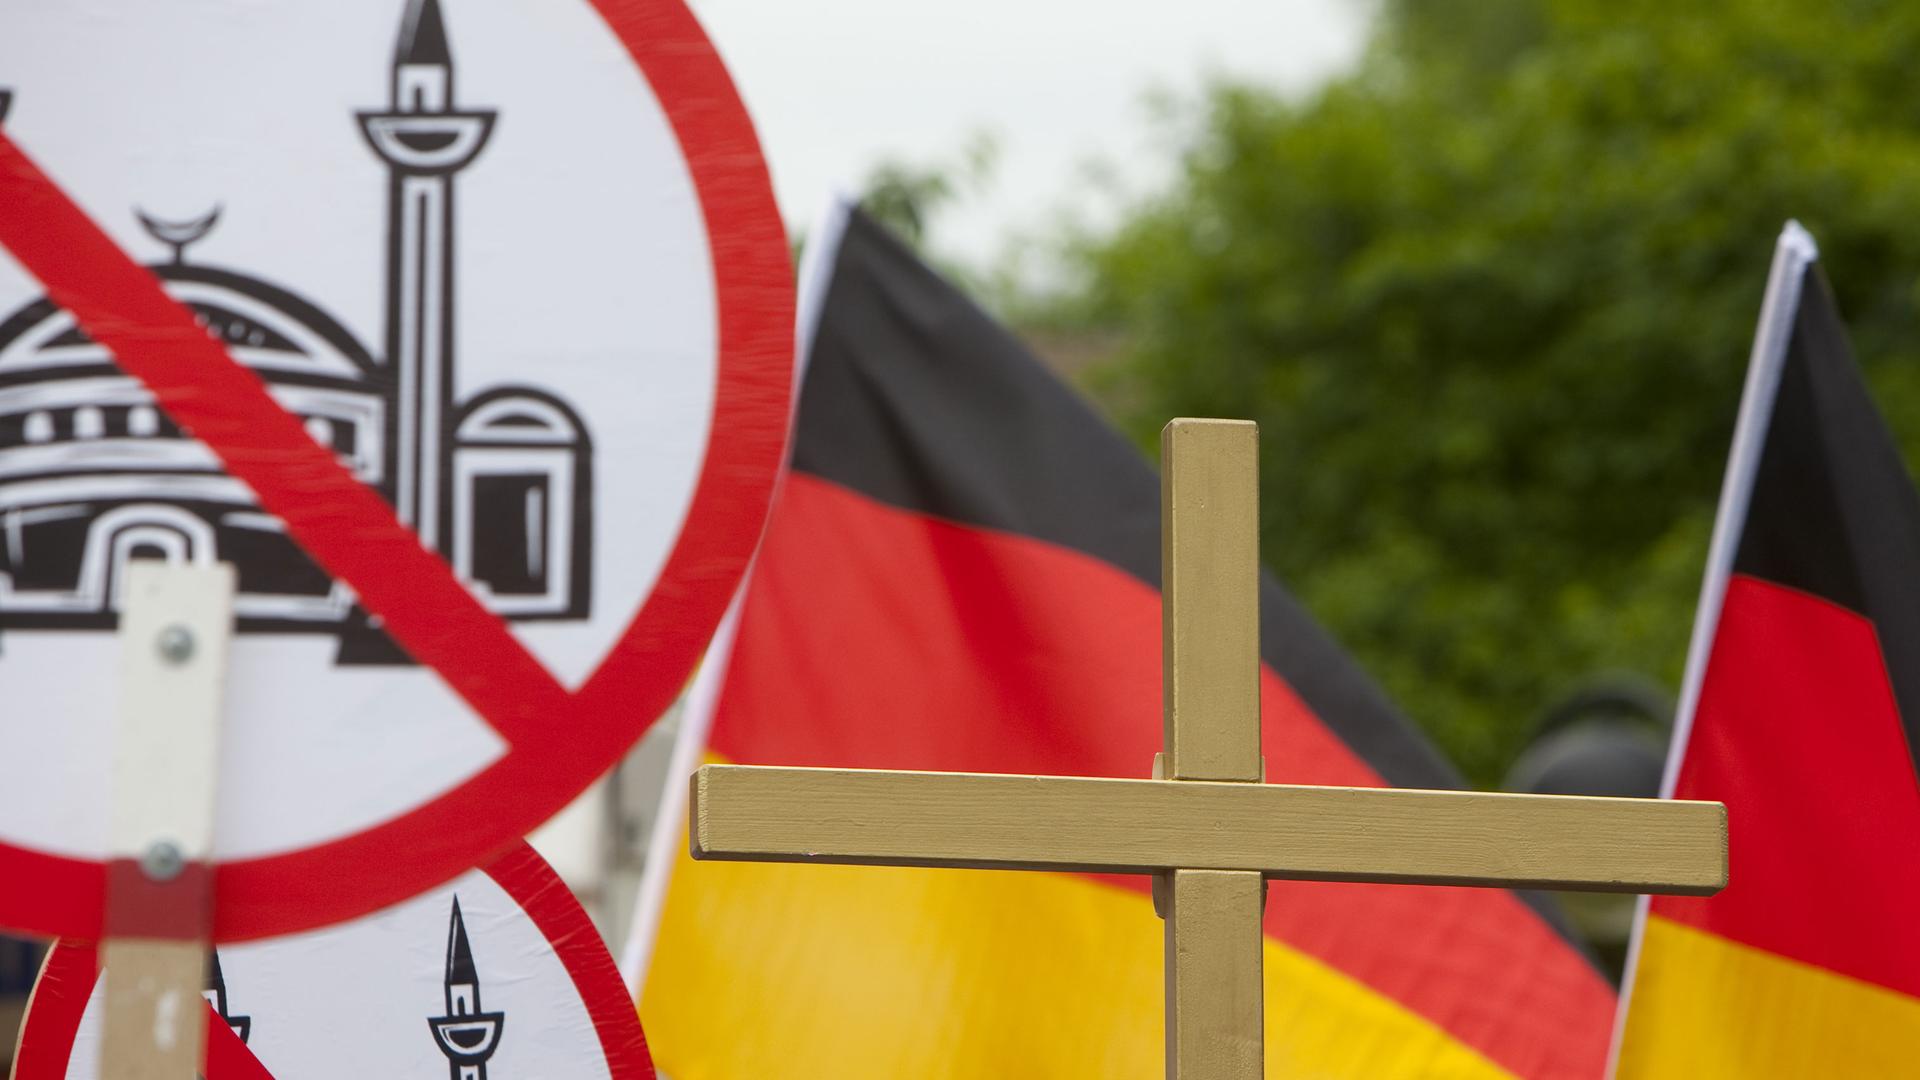 Auf dem Bild sind Schilder mit einer durchgestrichenen Moschee zu sehen, außerdem Deutschlandflaggen und ein Kreuz.